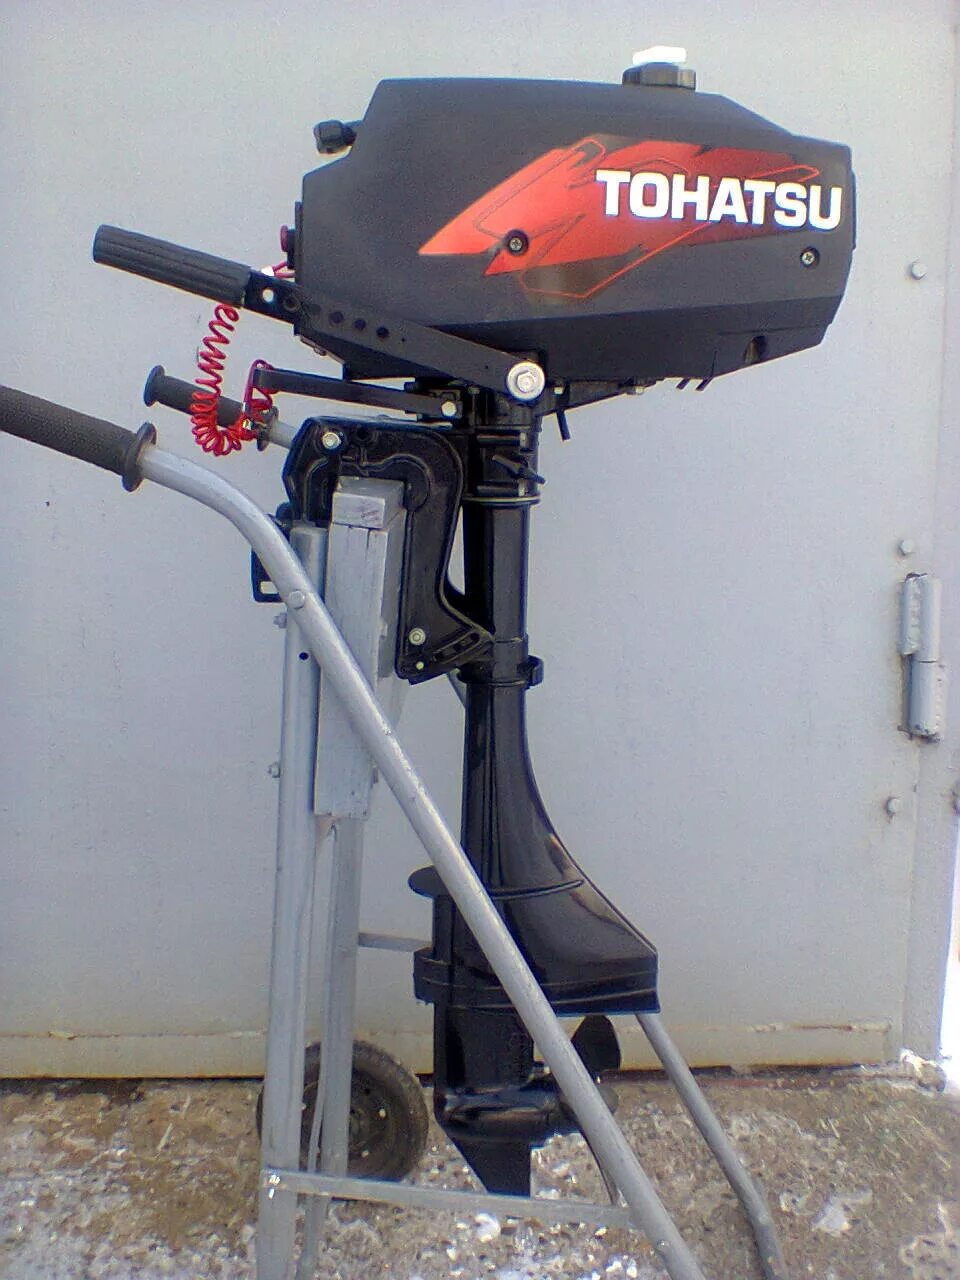 Объявление куплю лодочный мотор. Лодочный мотор Tohatsu m 3.5b2 s. Лодочный мотор Тохатсу 3.5. Лодочный мотор Тохатсу 2.5. Лодочный мотор Tohatsu м 3.5 b2 s.